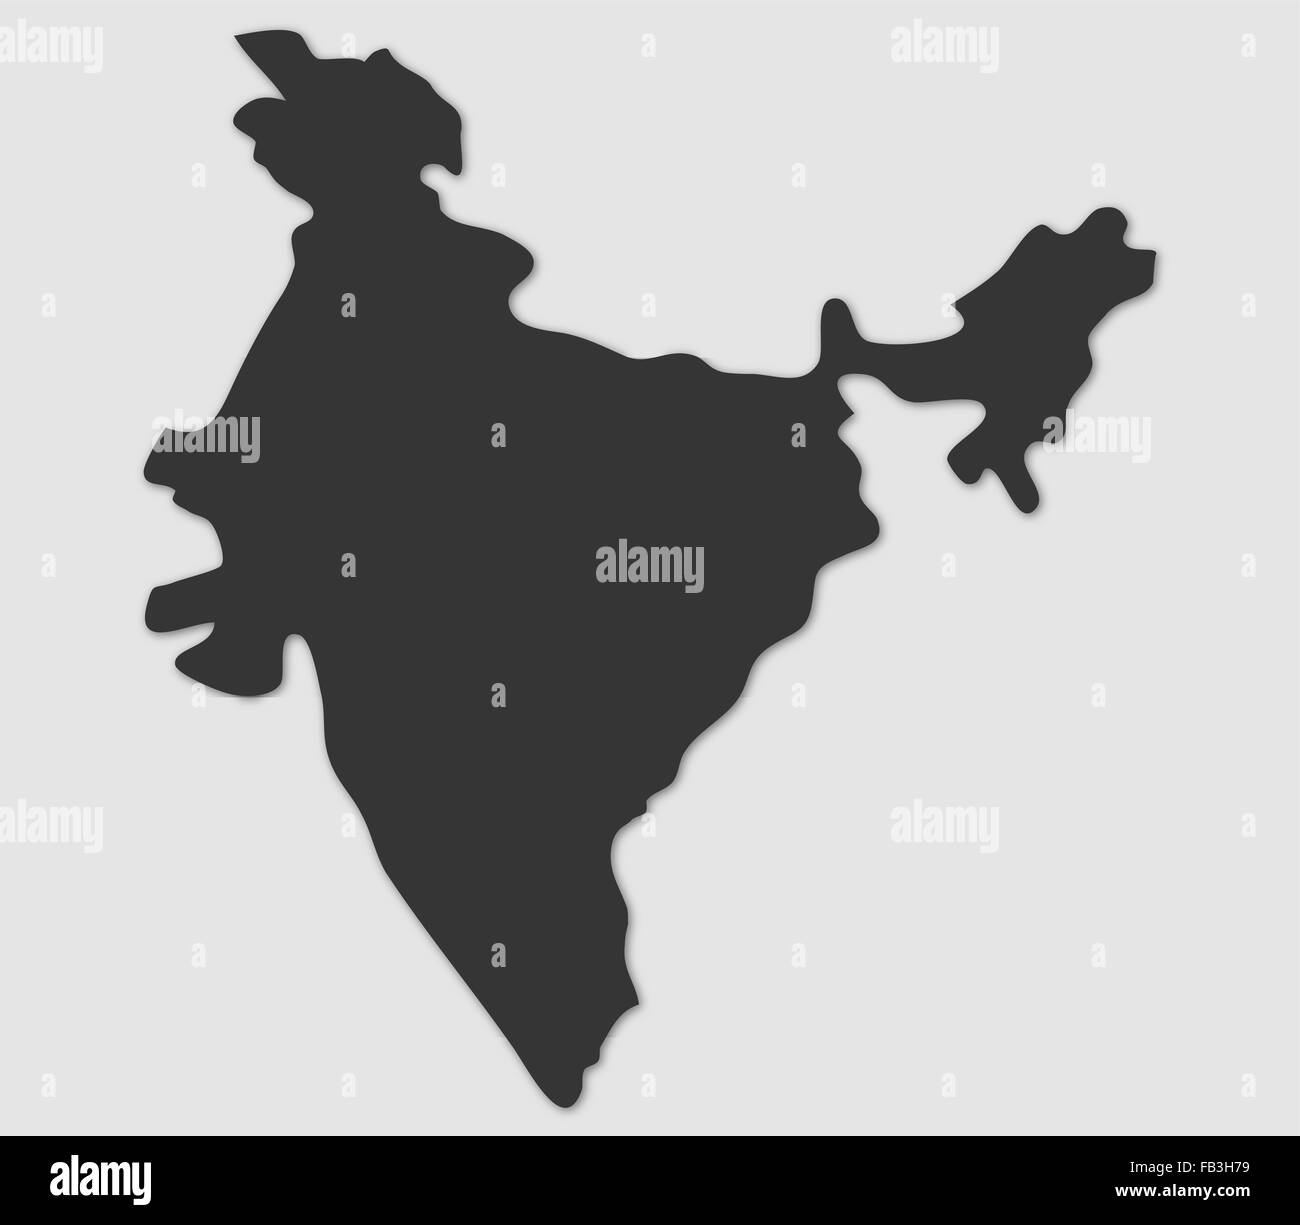 map india on white background Stock Photo - Alamy